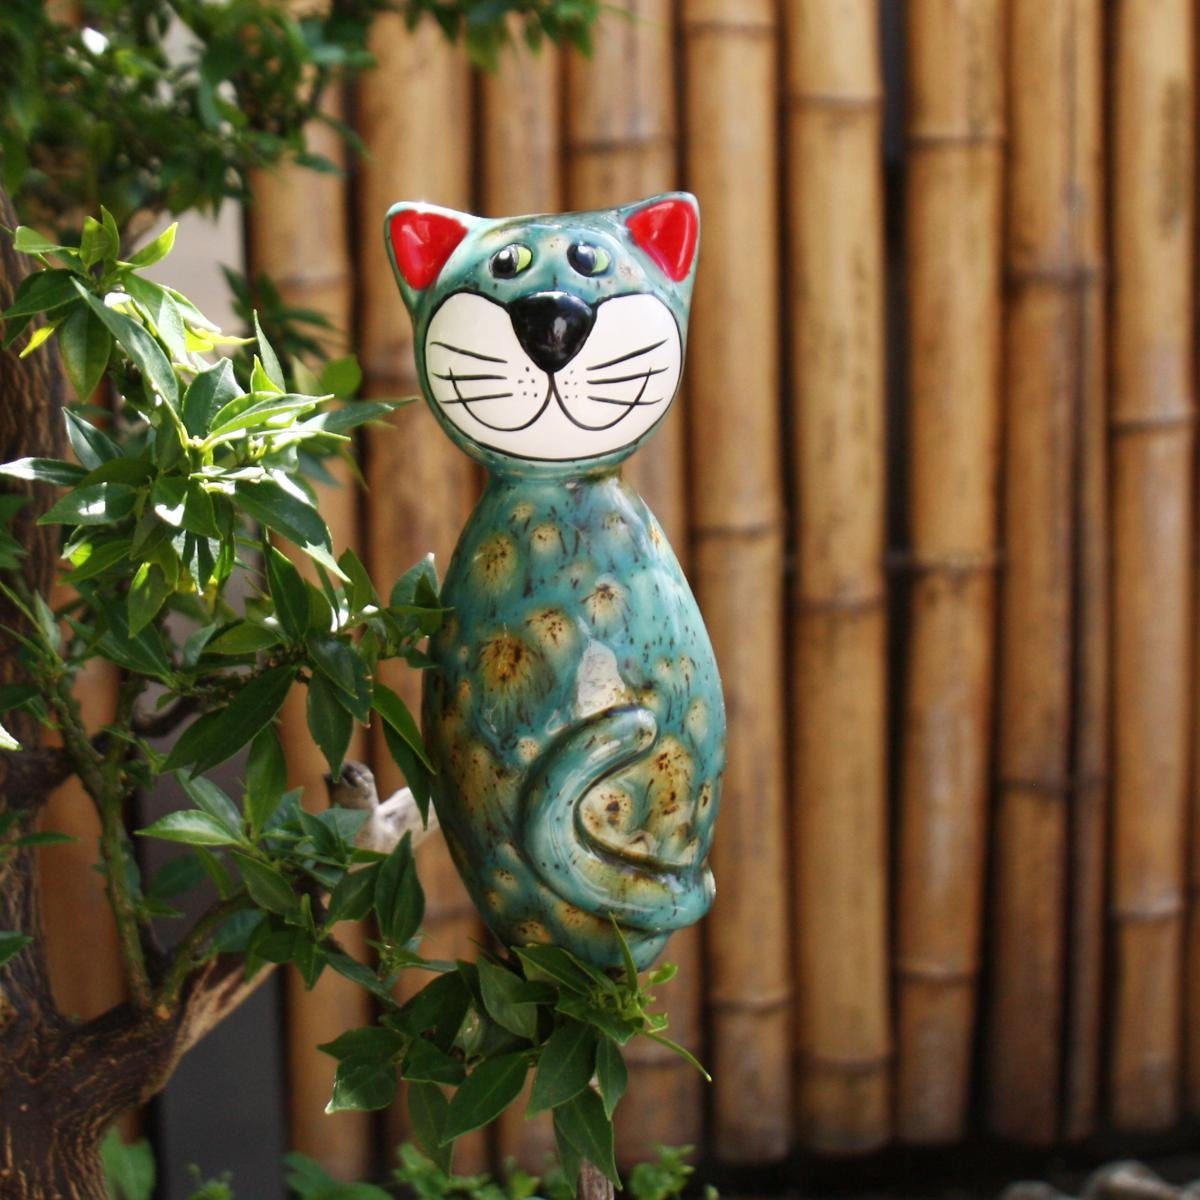 (Stück) MINI Keramik-Katze Gartenfigur mit Akzenten, Tangoo olivfarbenen Tangoo blaugrün